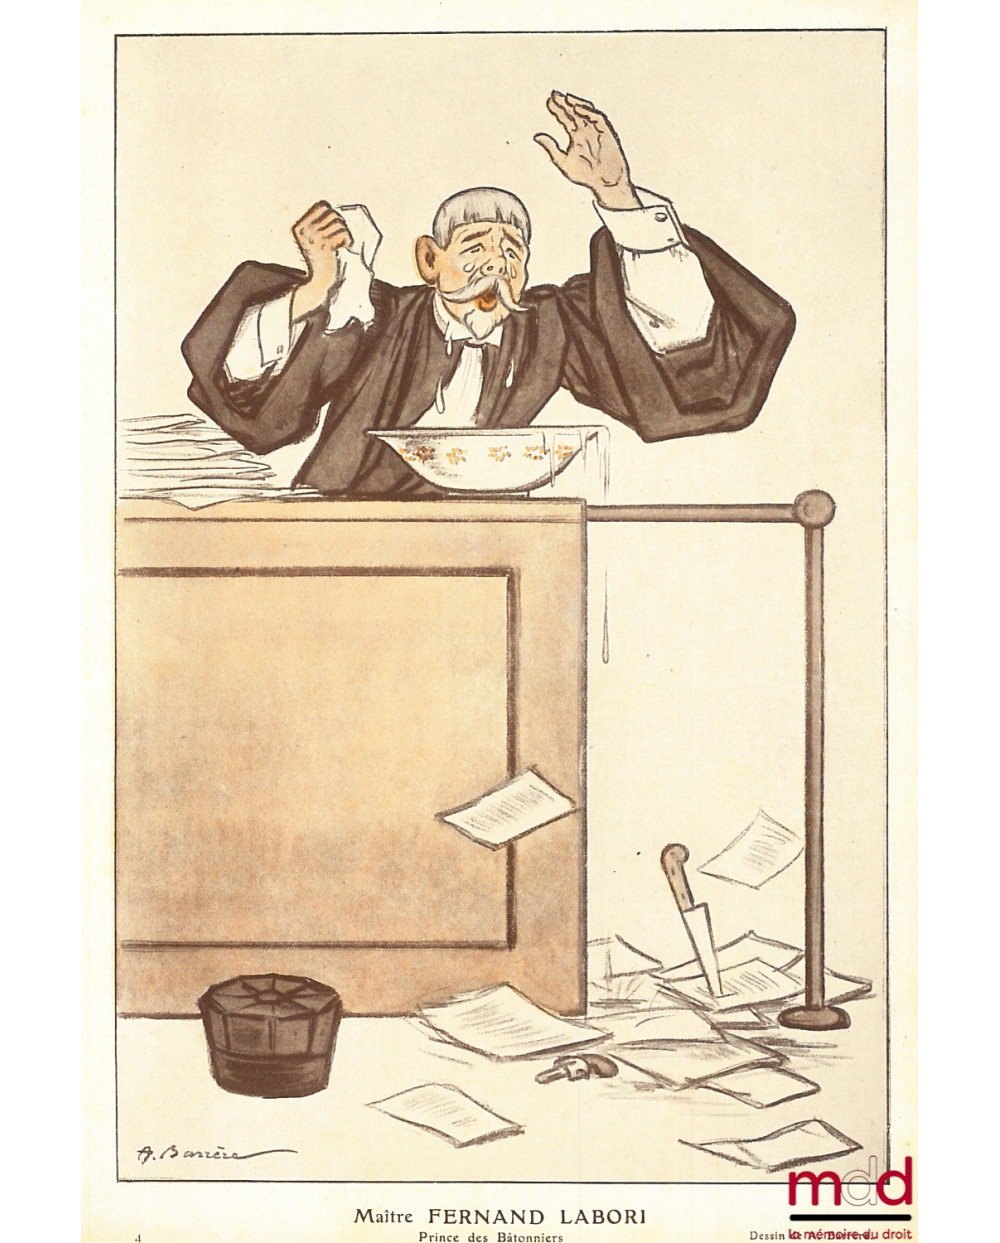 Maître FERNAND LABORI, Prince des Bâtonniers. Caricature de A. Barrère reproduite dans le magasine Fantasio [périodique satir...